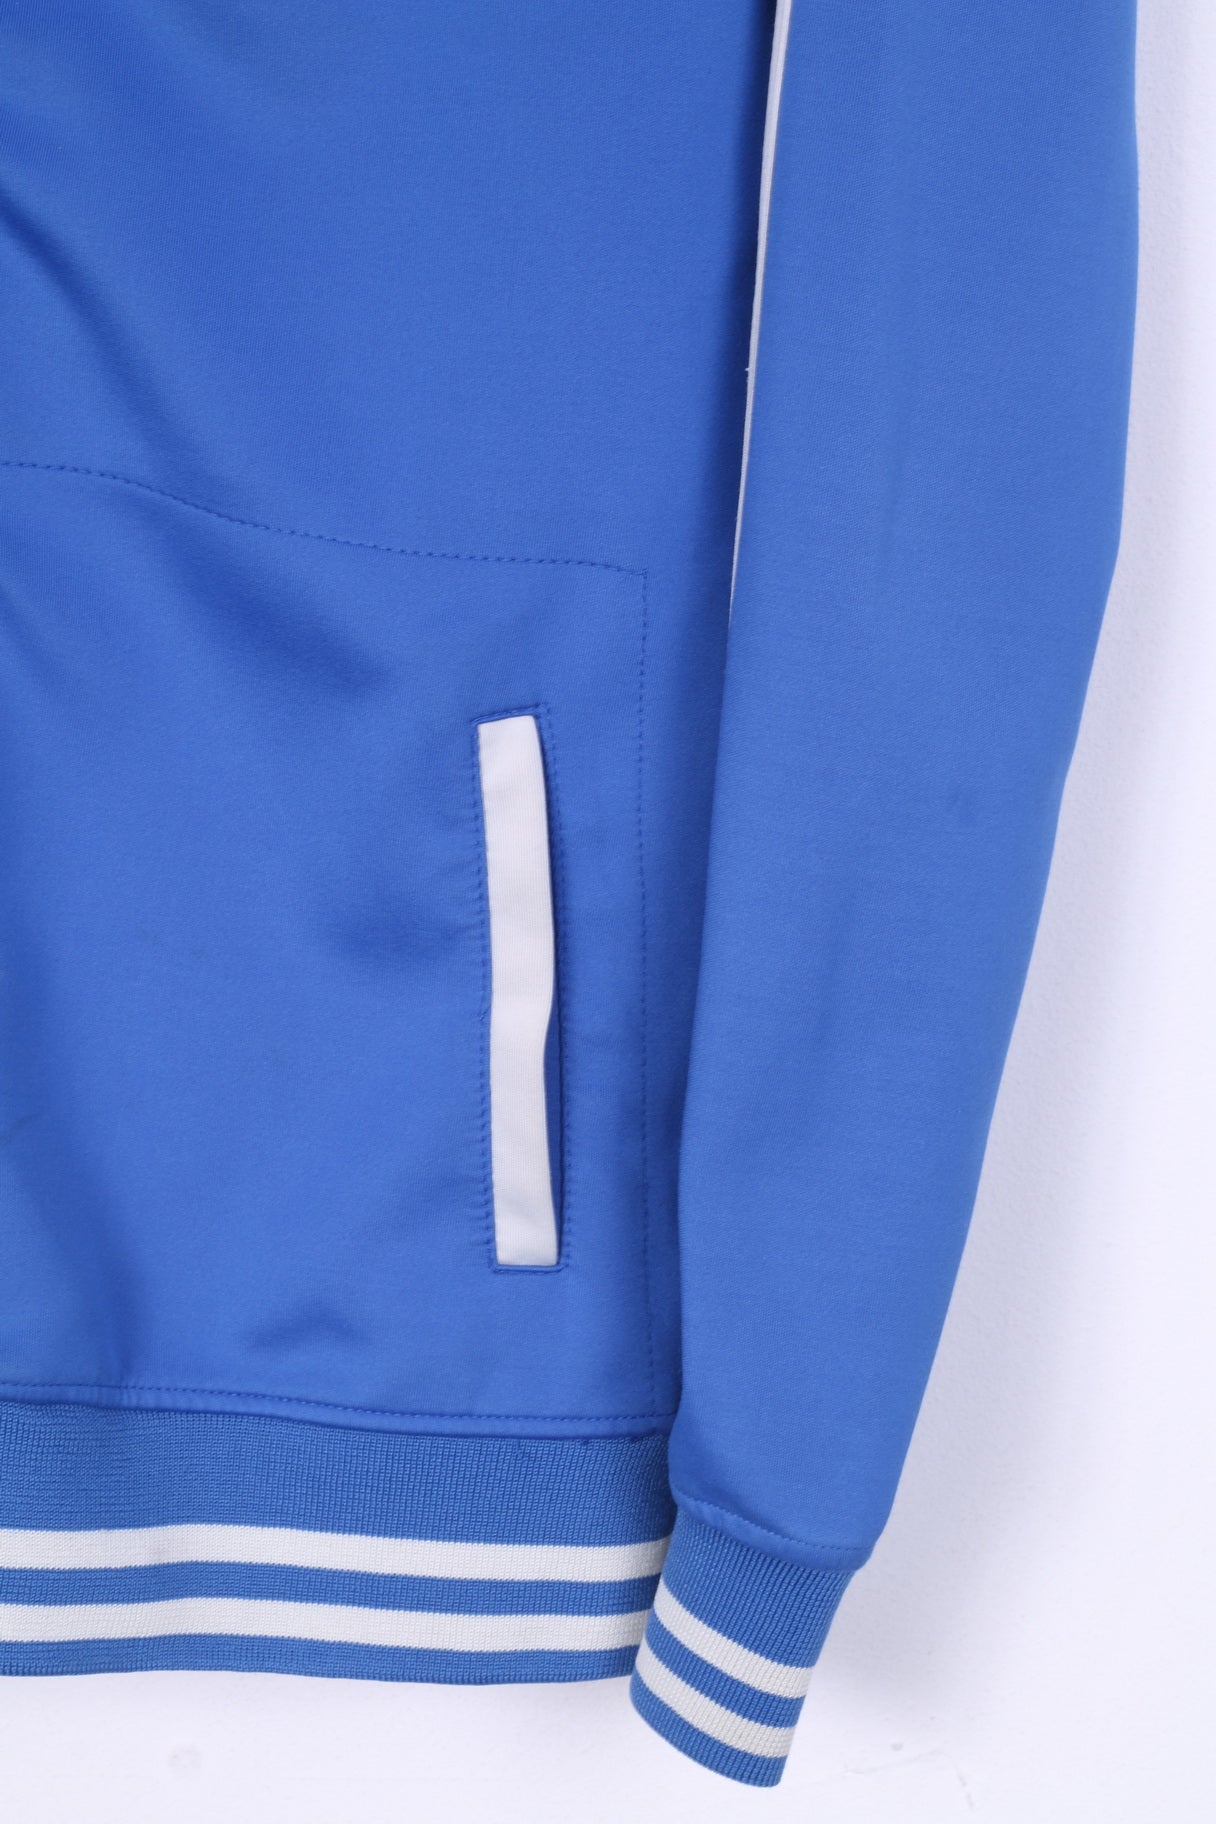 Retour Denim De Luxe Womens 14 XL Sweatshirt Full Zipper Bleu Clair Superheroes Sport 